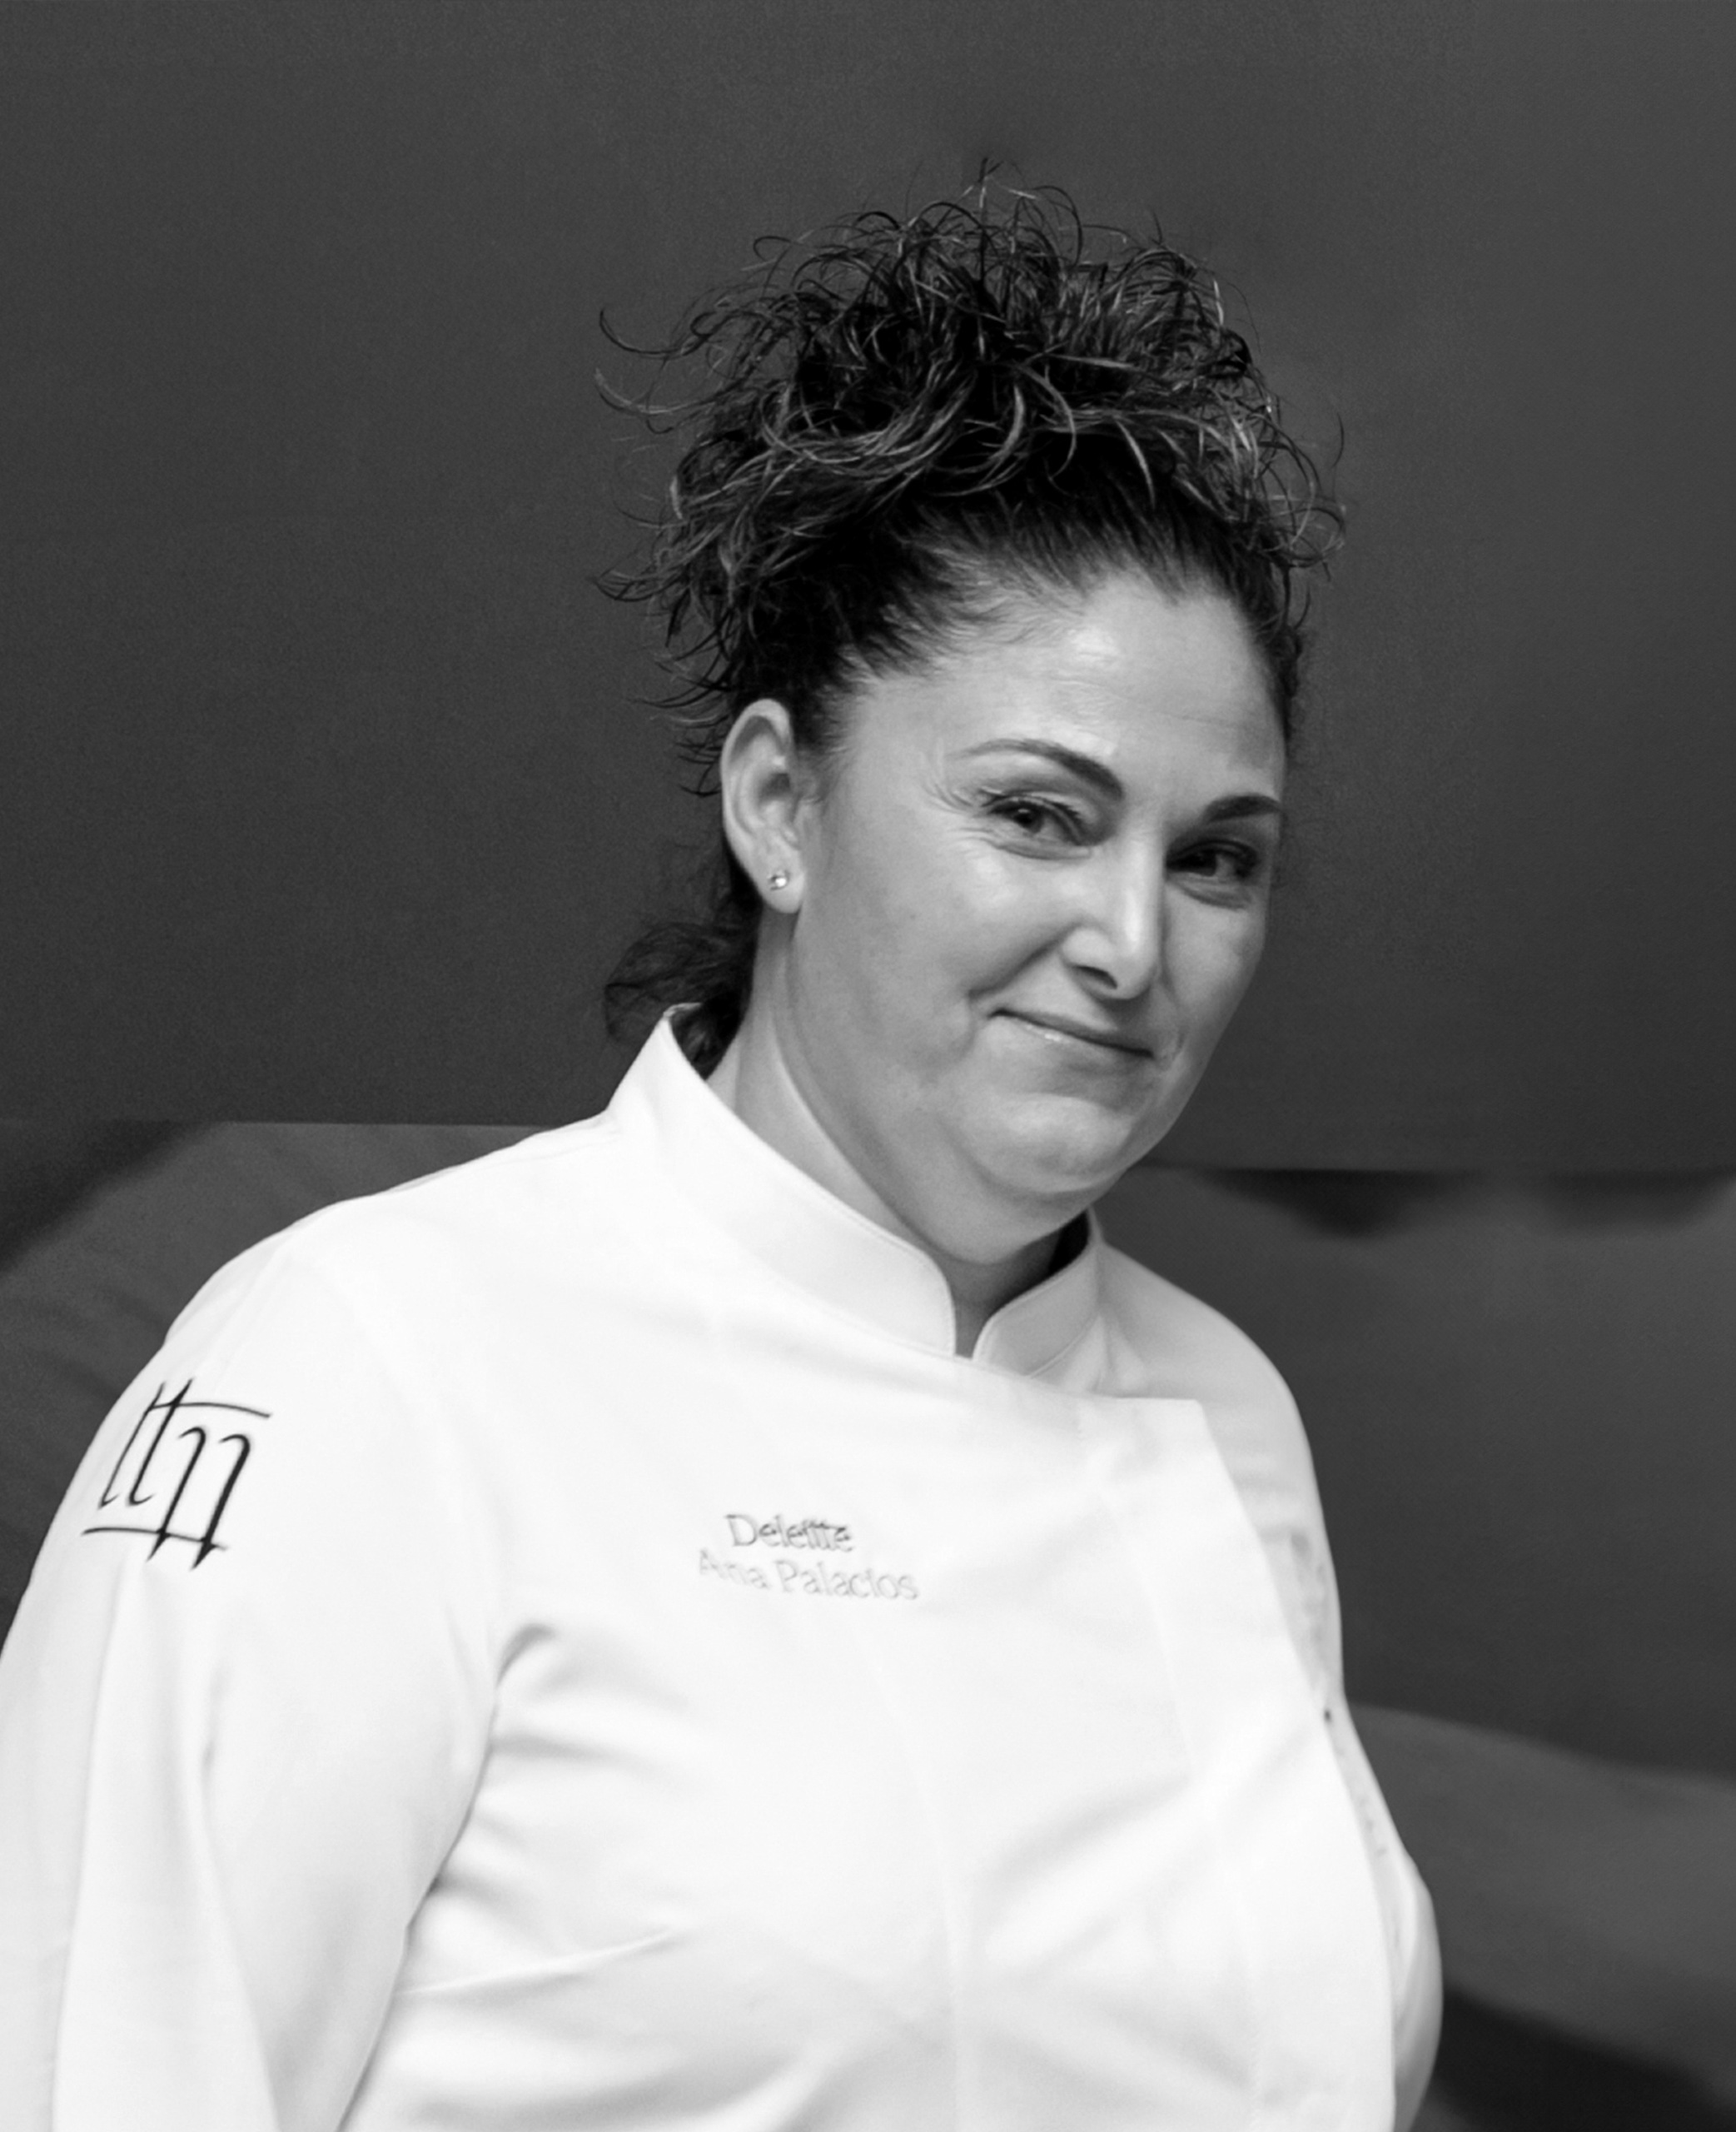 Ana Palacios - Jefa de cocina de Deleitte Catering Gourmet